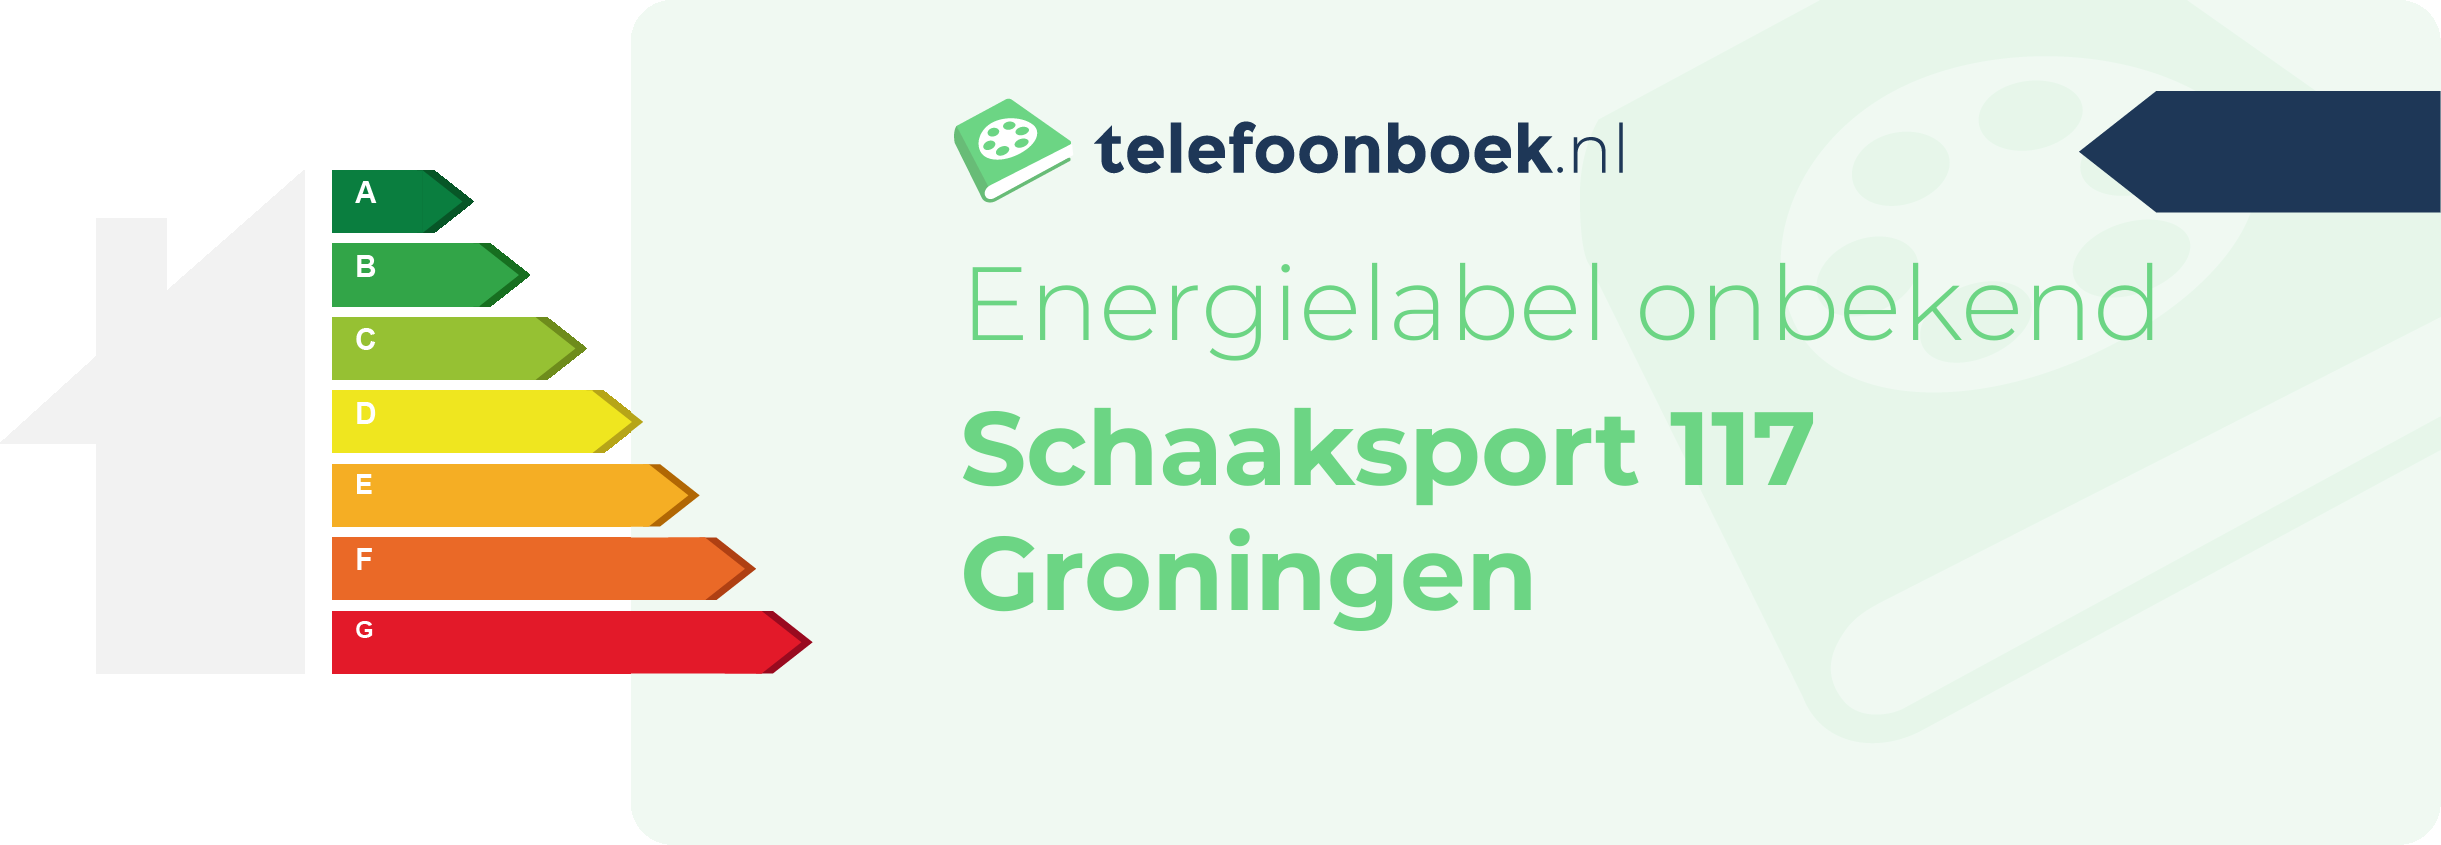 Energielabel Schaaksport 117 Groningen